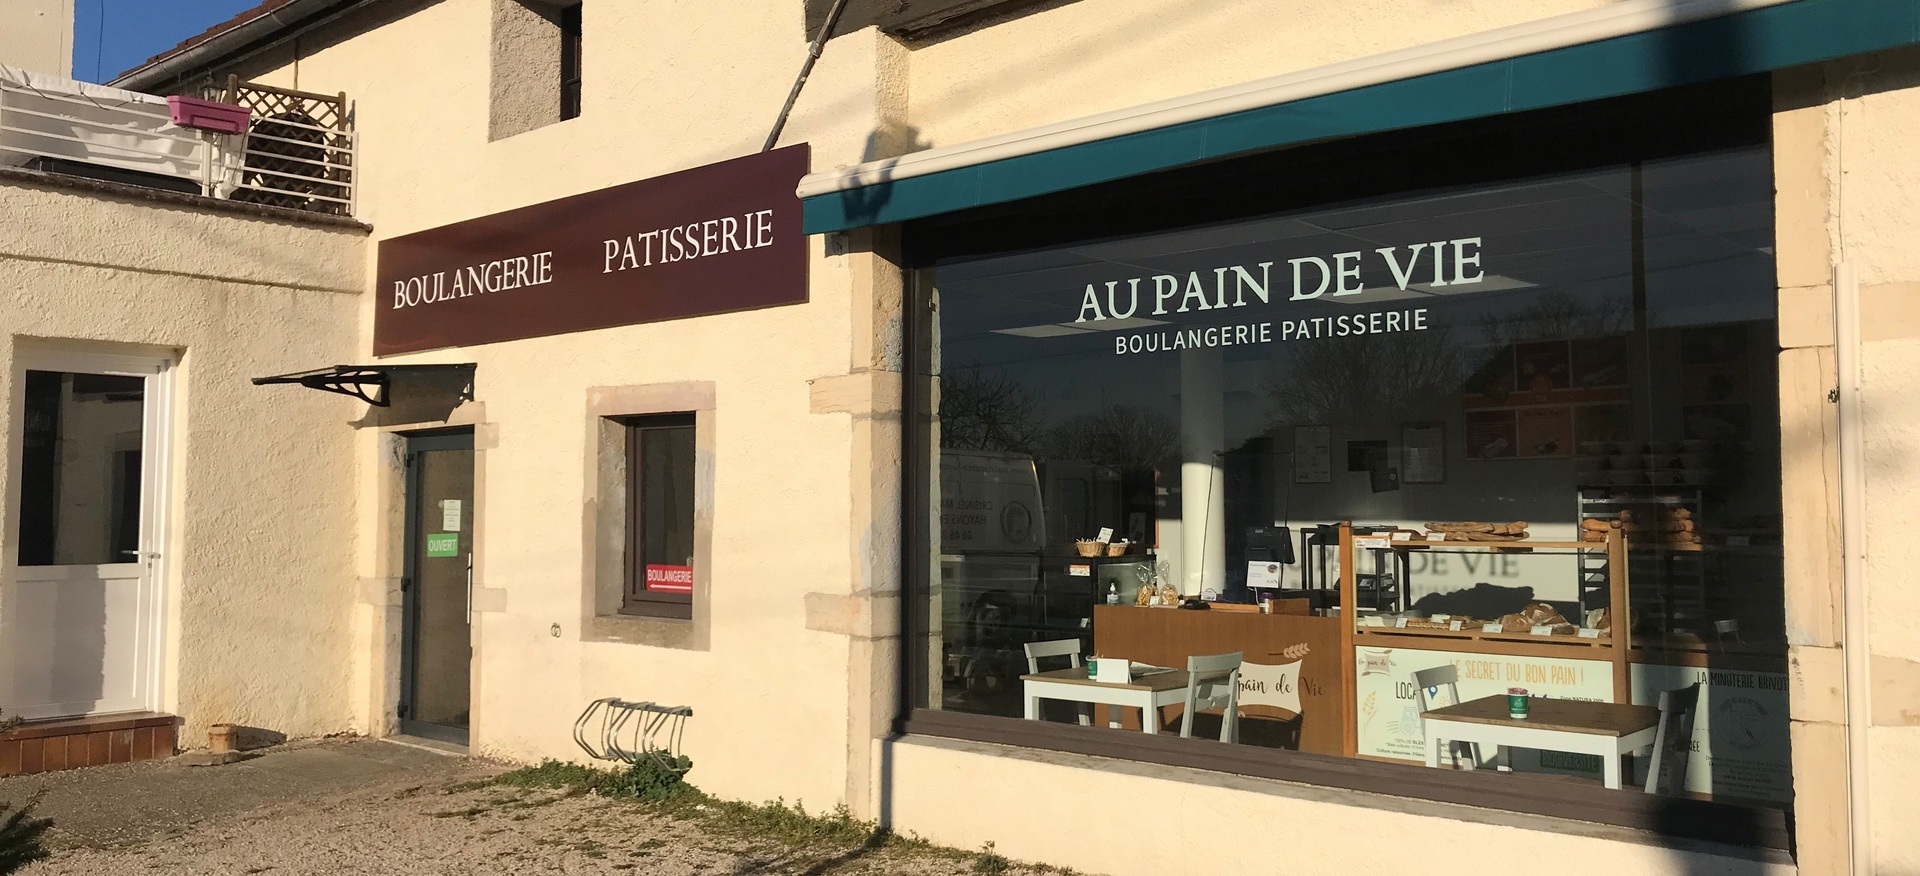 Boutique Boulangerie AU PAIN DE VIE - Cte-d'Or